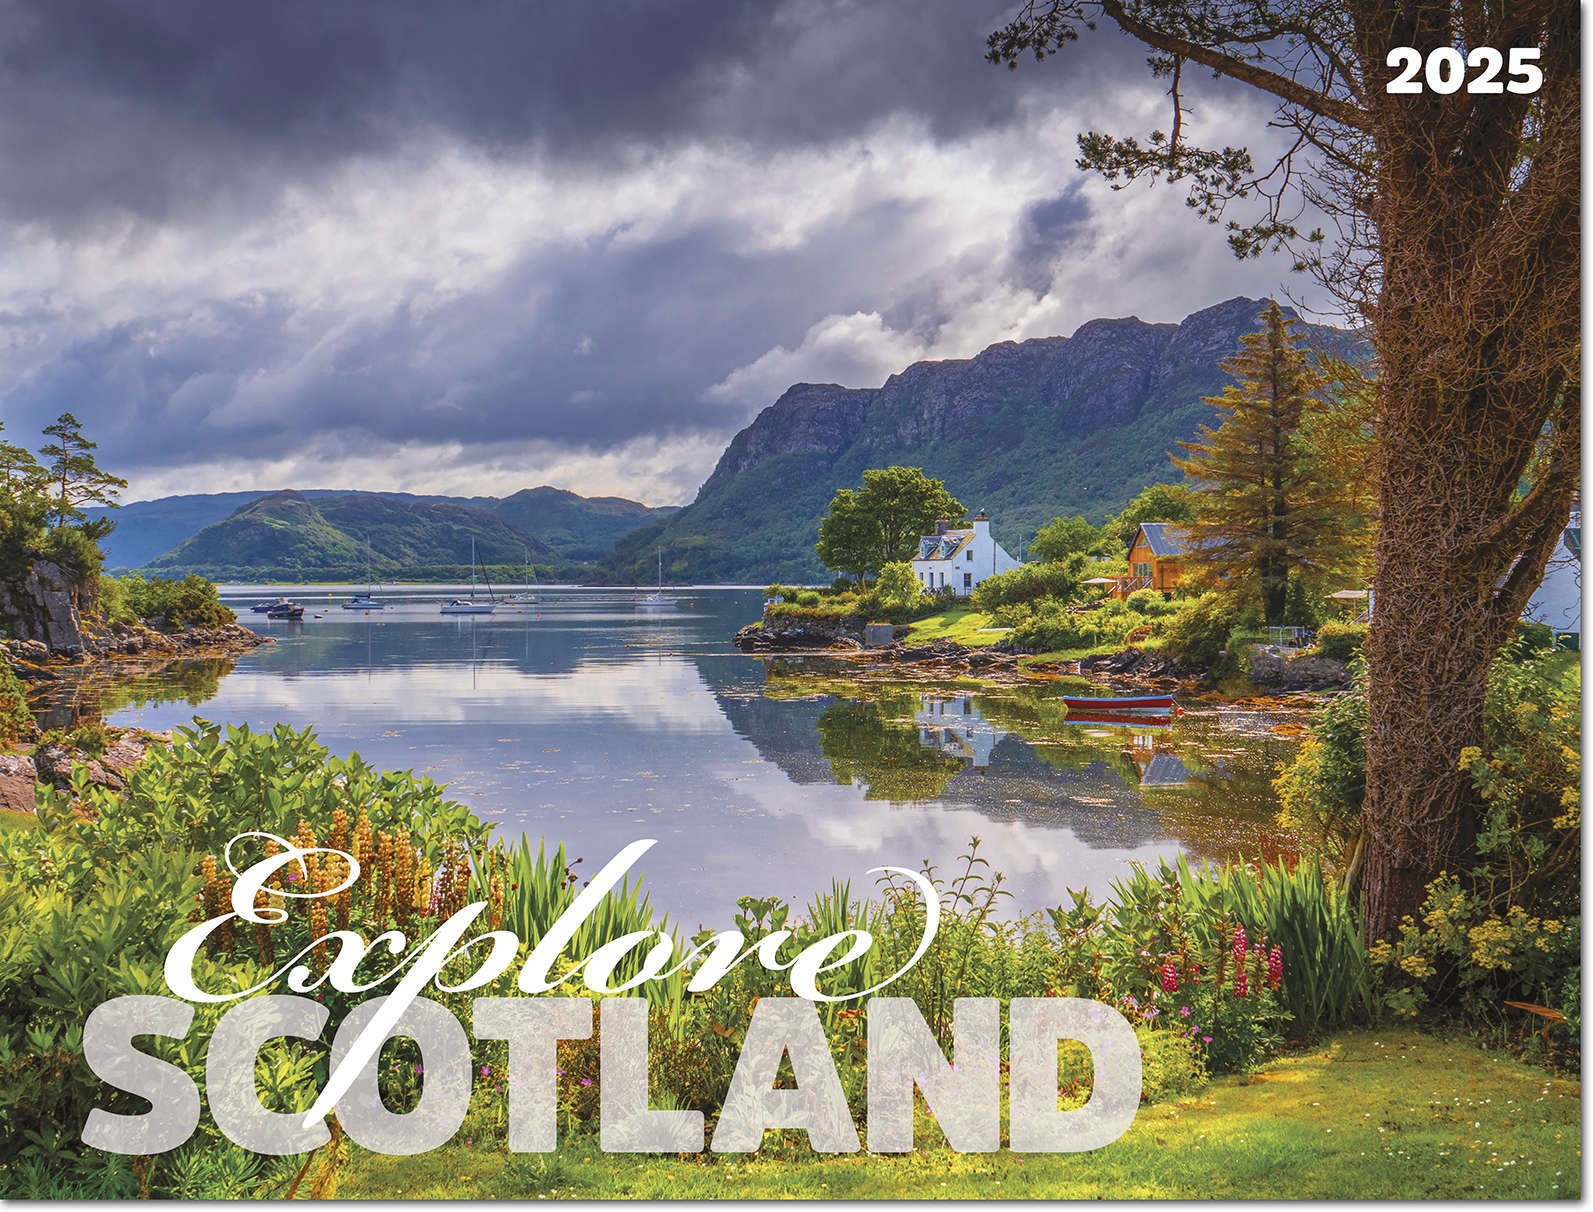 Explore Scotland Calendar